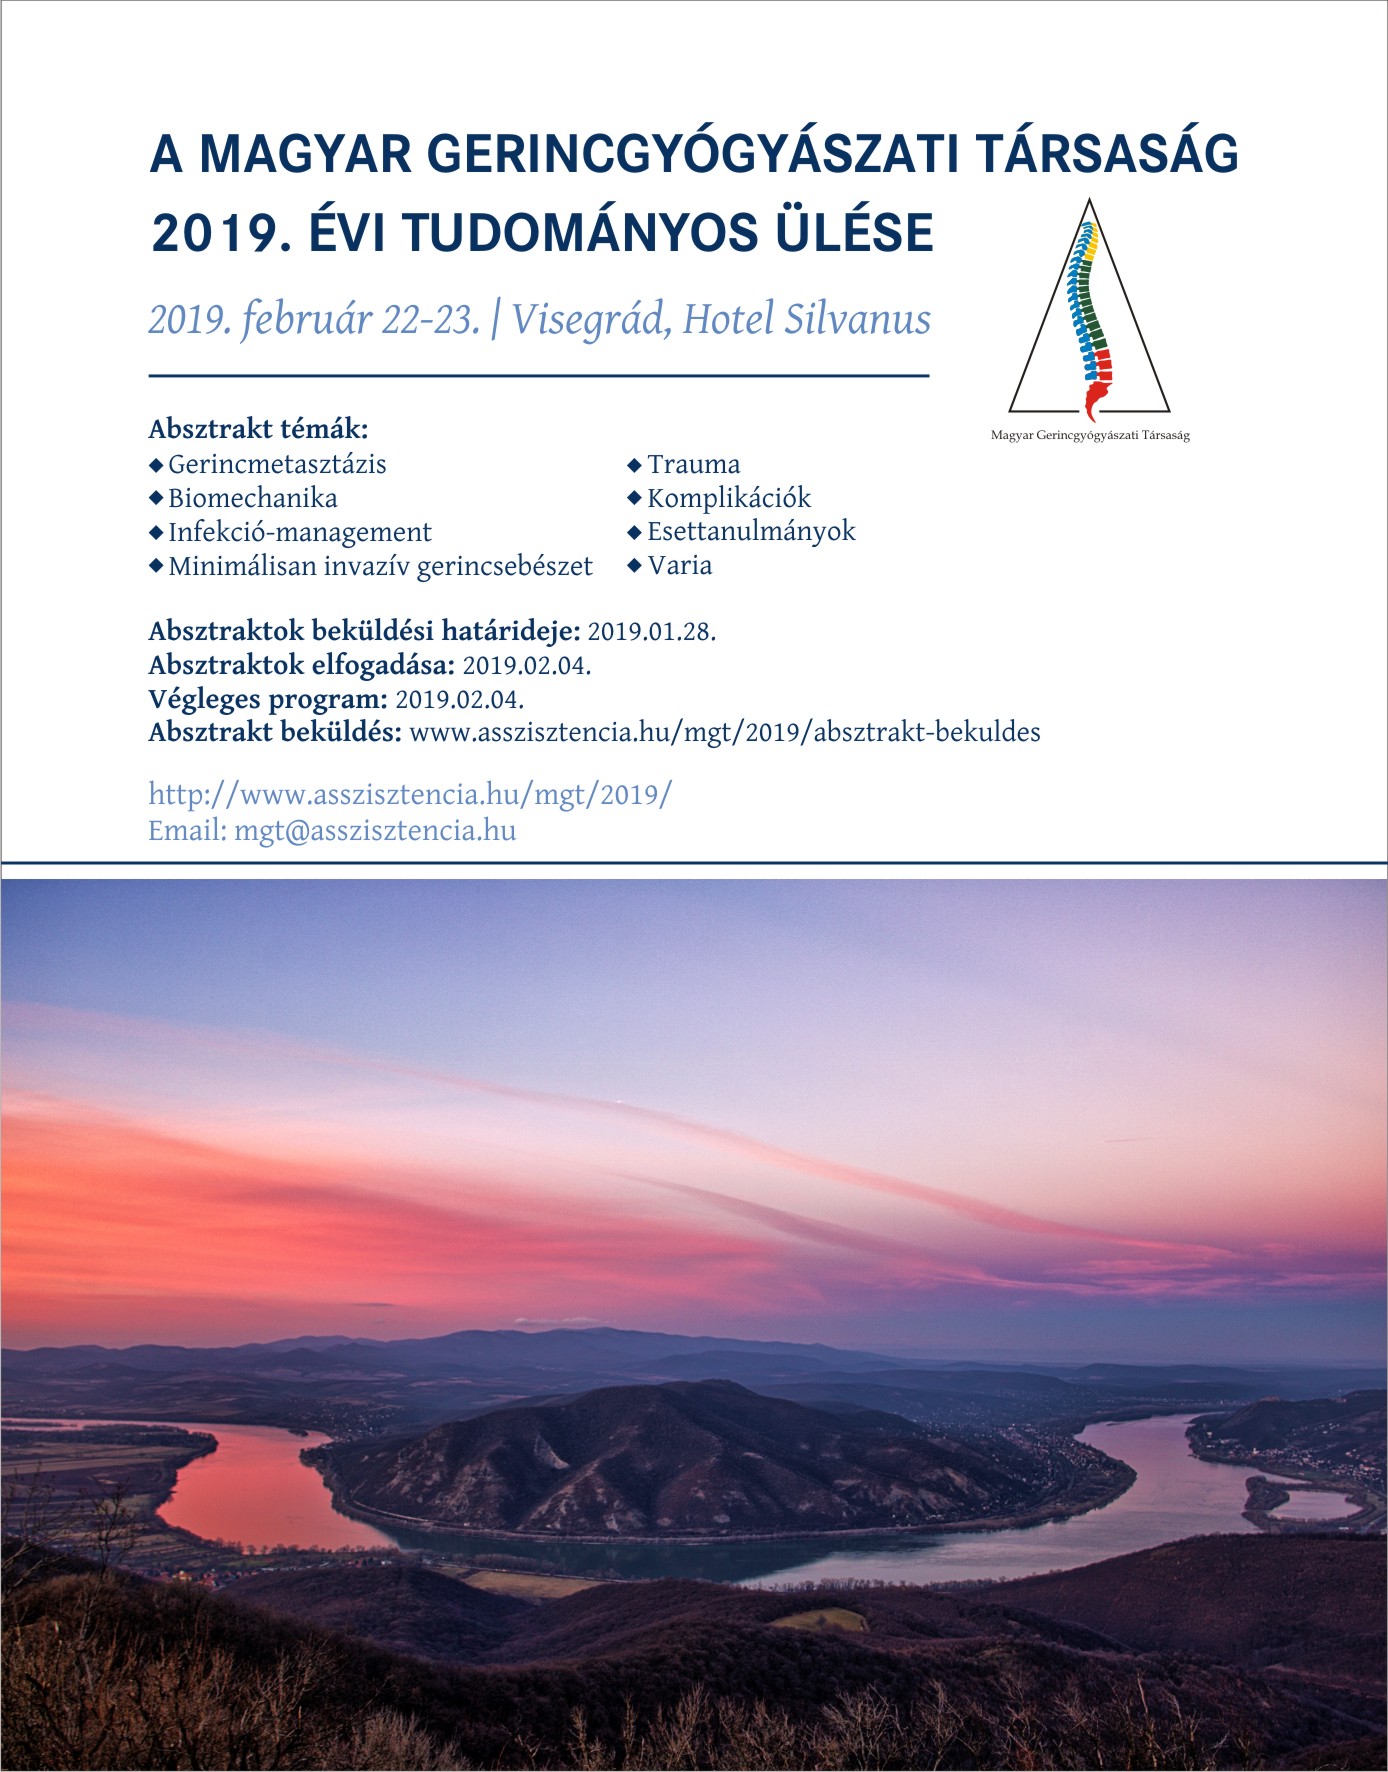 A Magyar Gerincgyógyászati Társaság Visegrágon megrendezésre kerülő konferenciájának plakátja. 